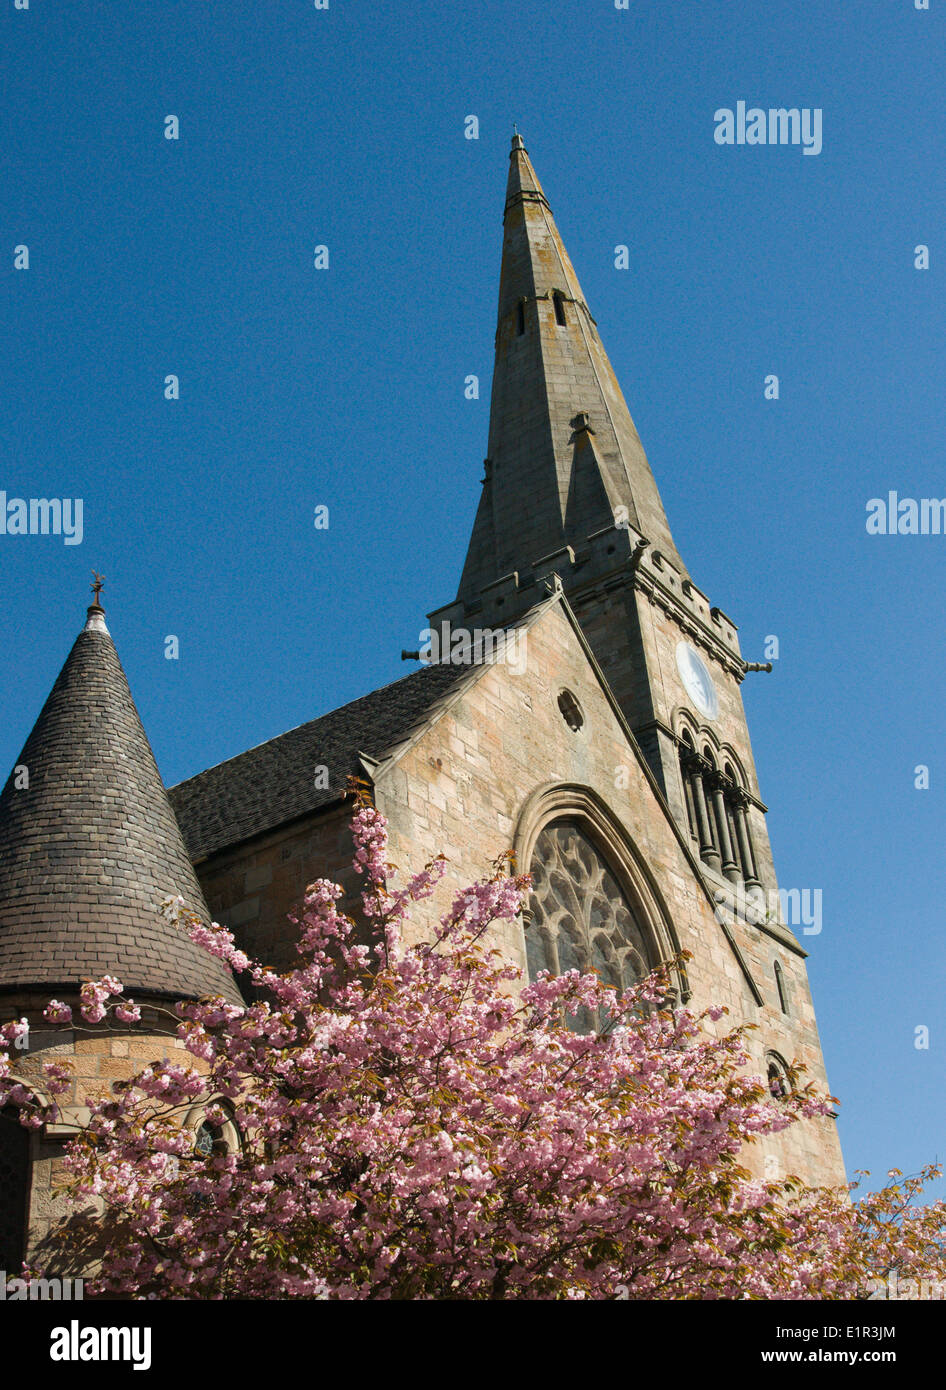 Dalziel Saint Andrews iglesia, Motherwell, Lanarkshire, con uno de los cerezos en flor en el recinto Foto de stock